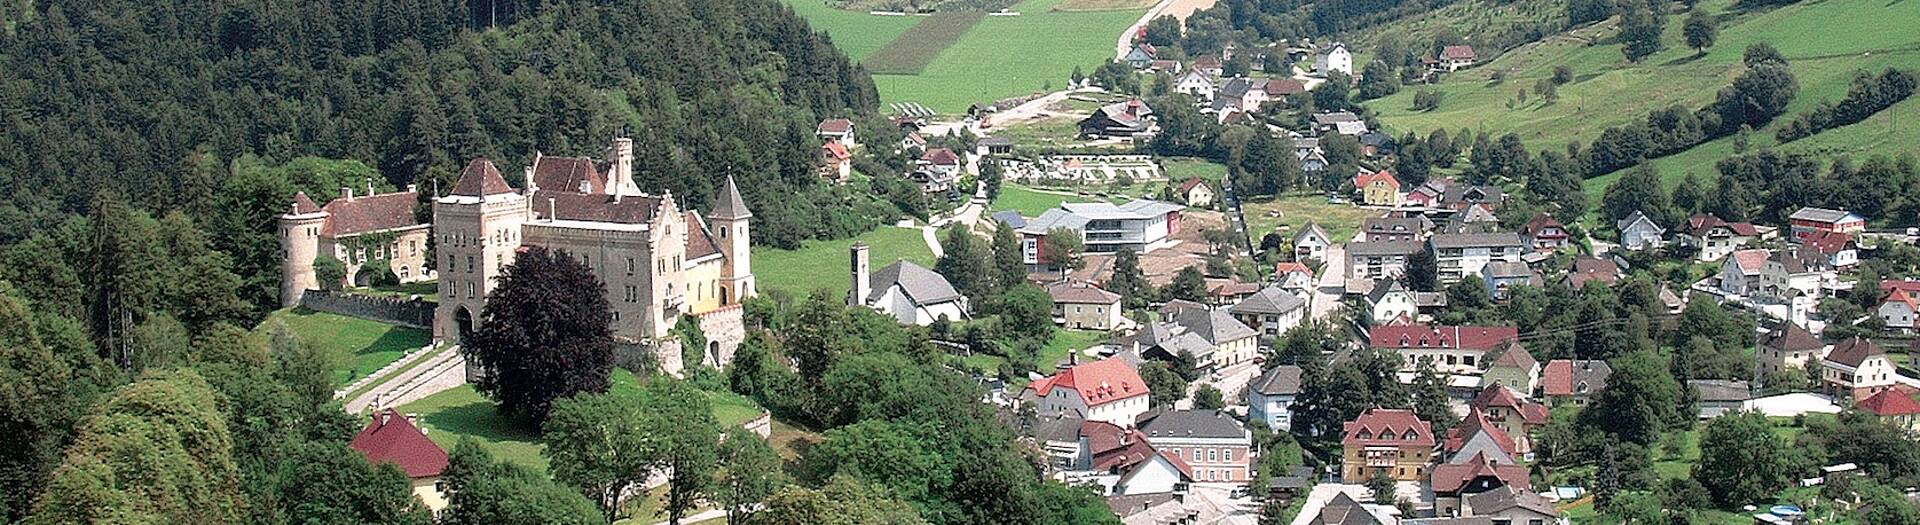 Eberstein in der Tourismusregion Mittelkärnten